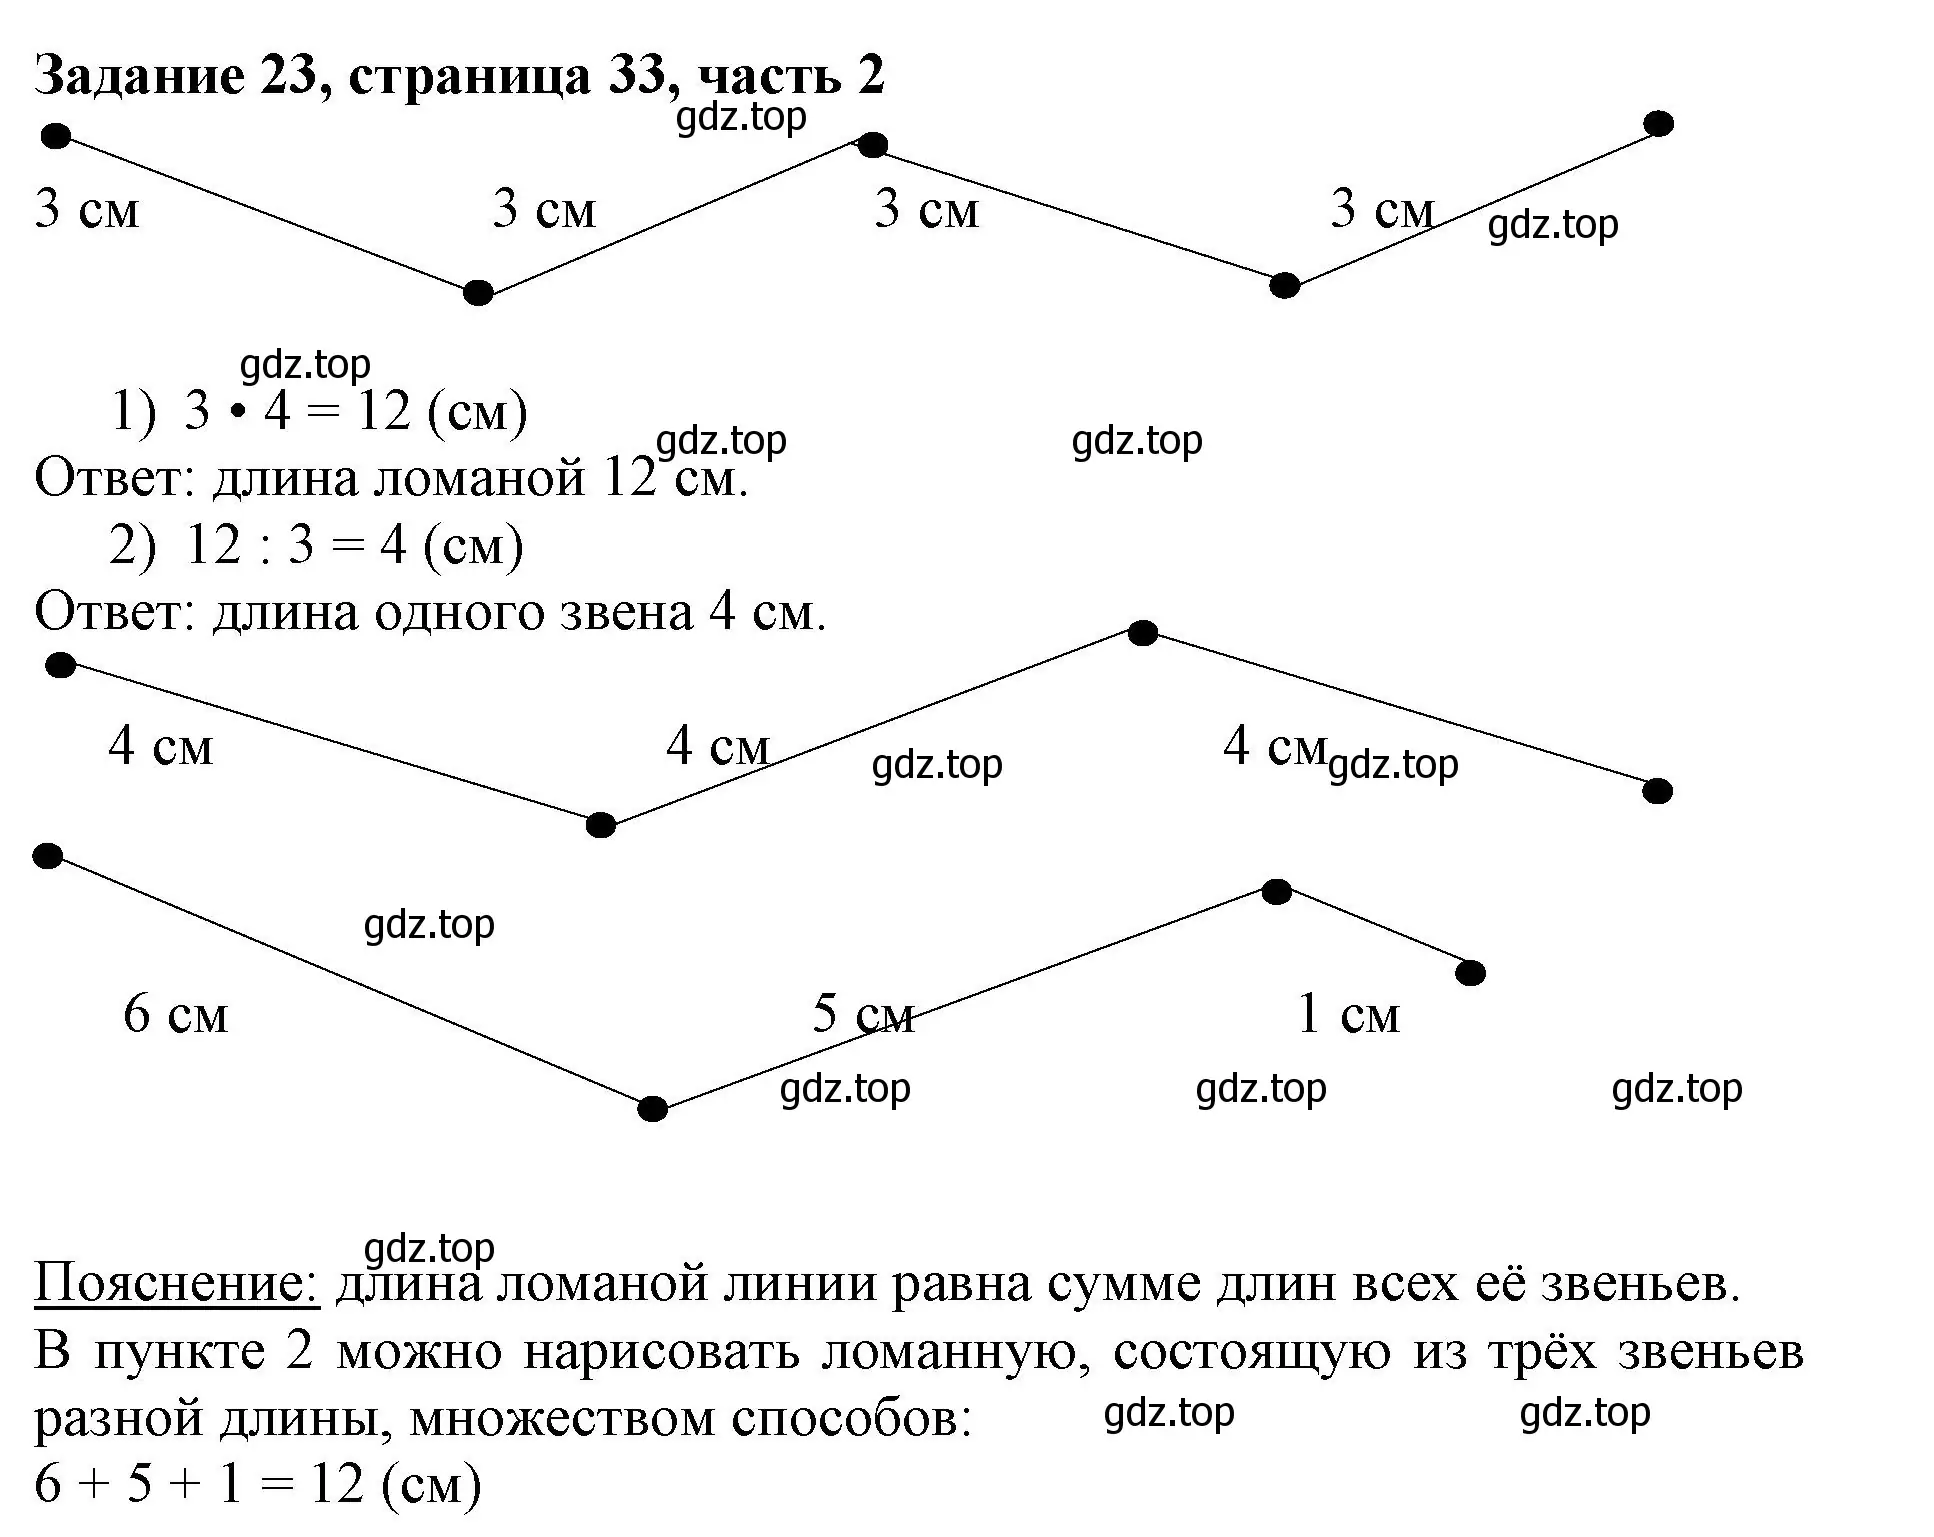 Решение номер 23 (страница 33) гдз по математике 3 класс Моро, Бантова, учебник 2 часть